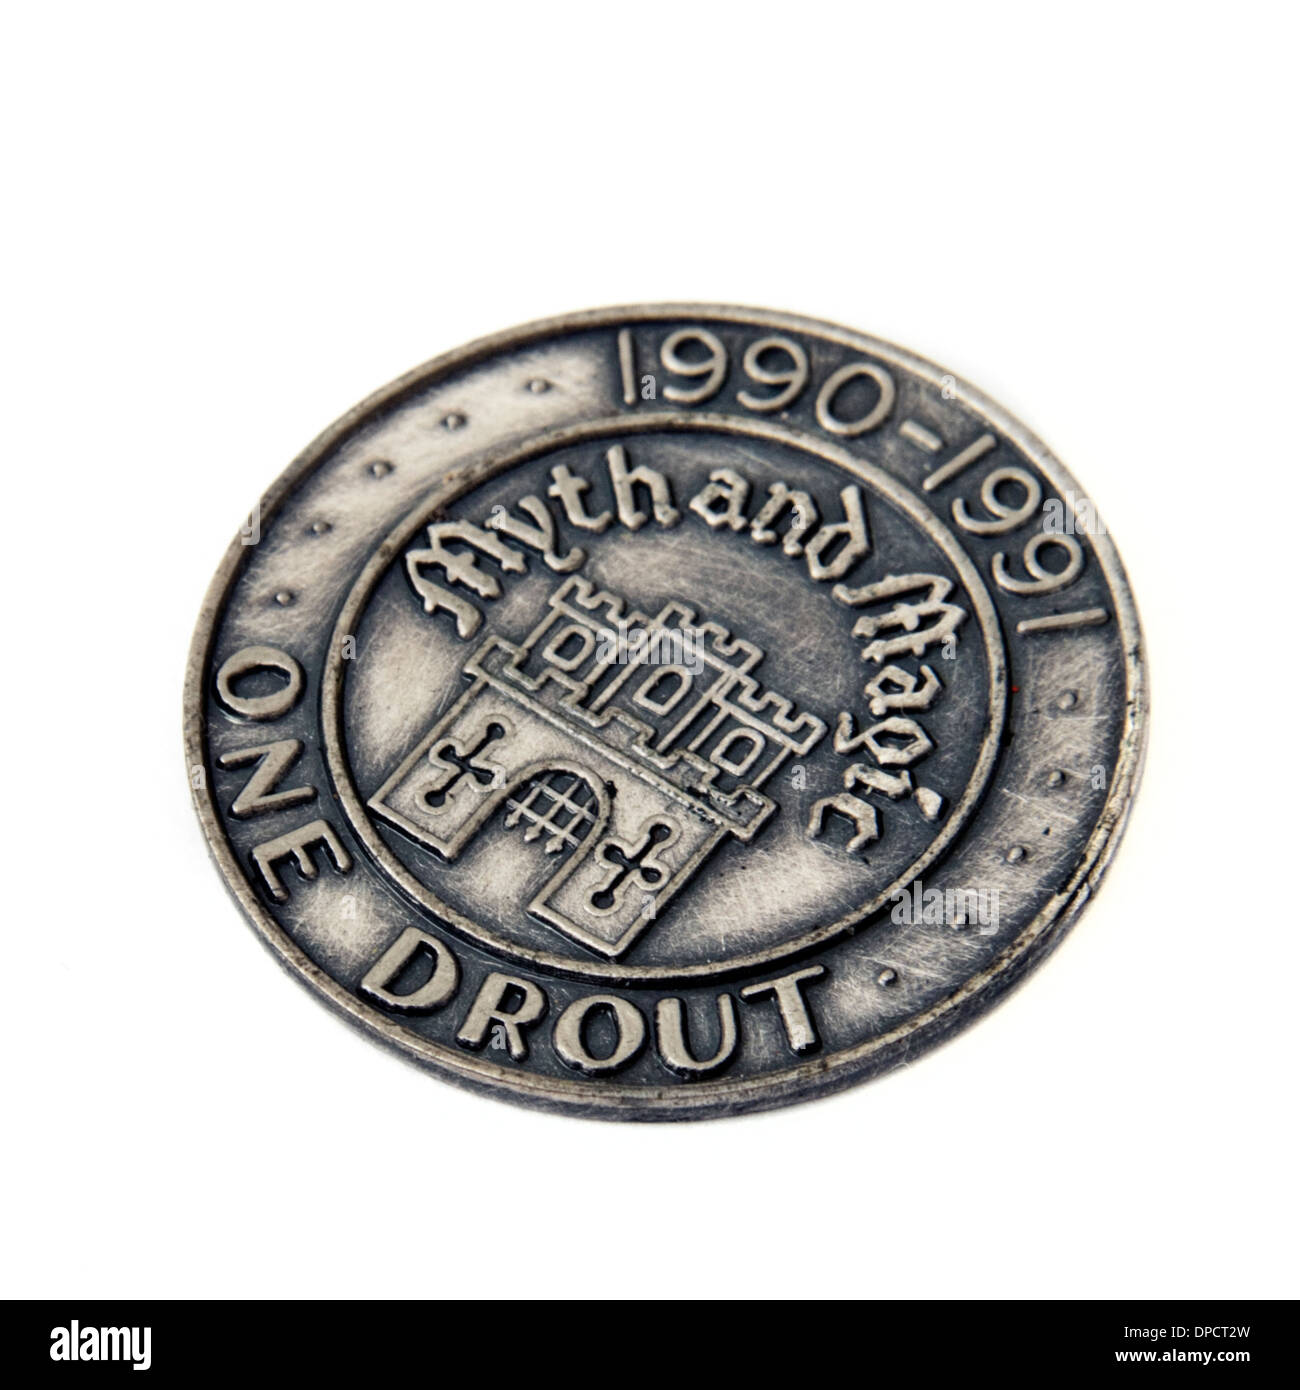 Mythos und Magie "Ein Drout" Sammlerstück Münze von The Tudor Mint (Watson Group) von 1990-1991 Stockfoto